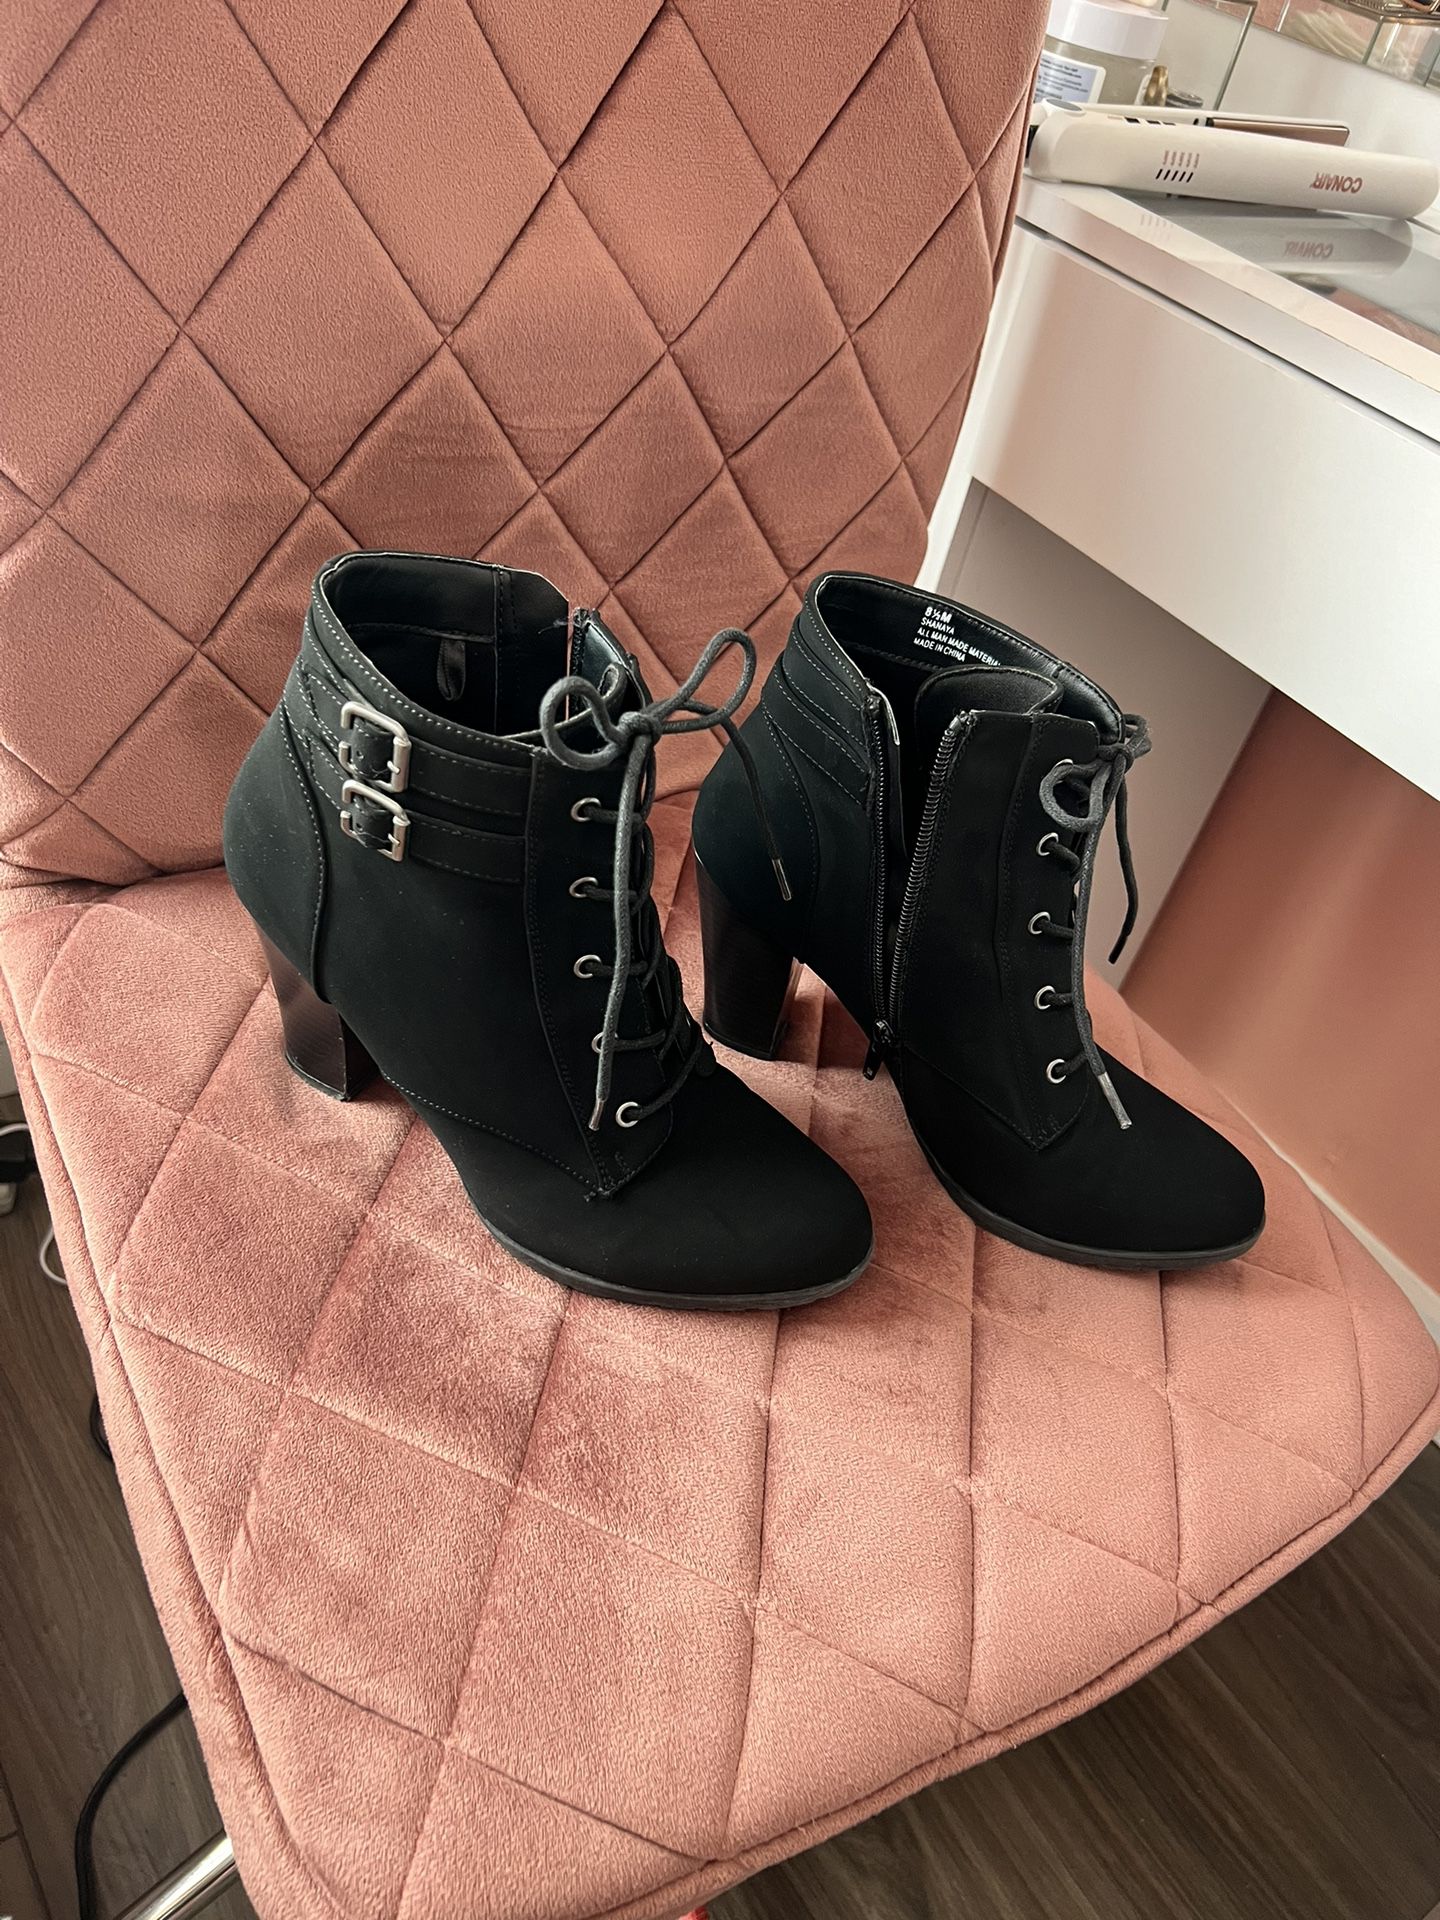 Women’s Black Boots Size 8 1/2